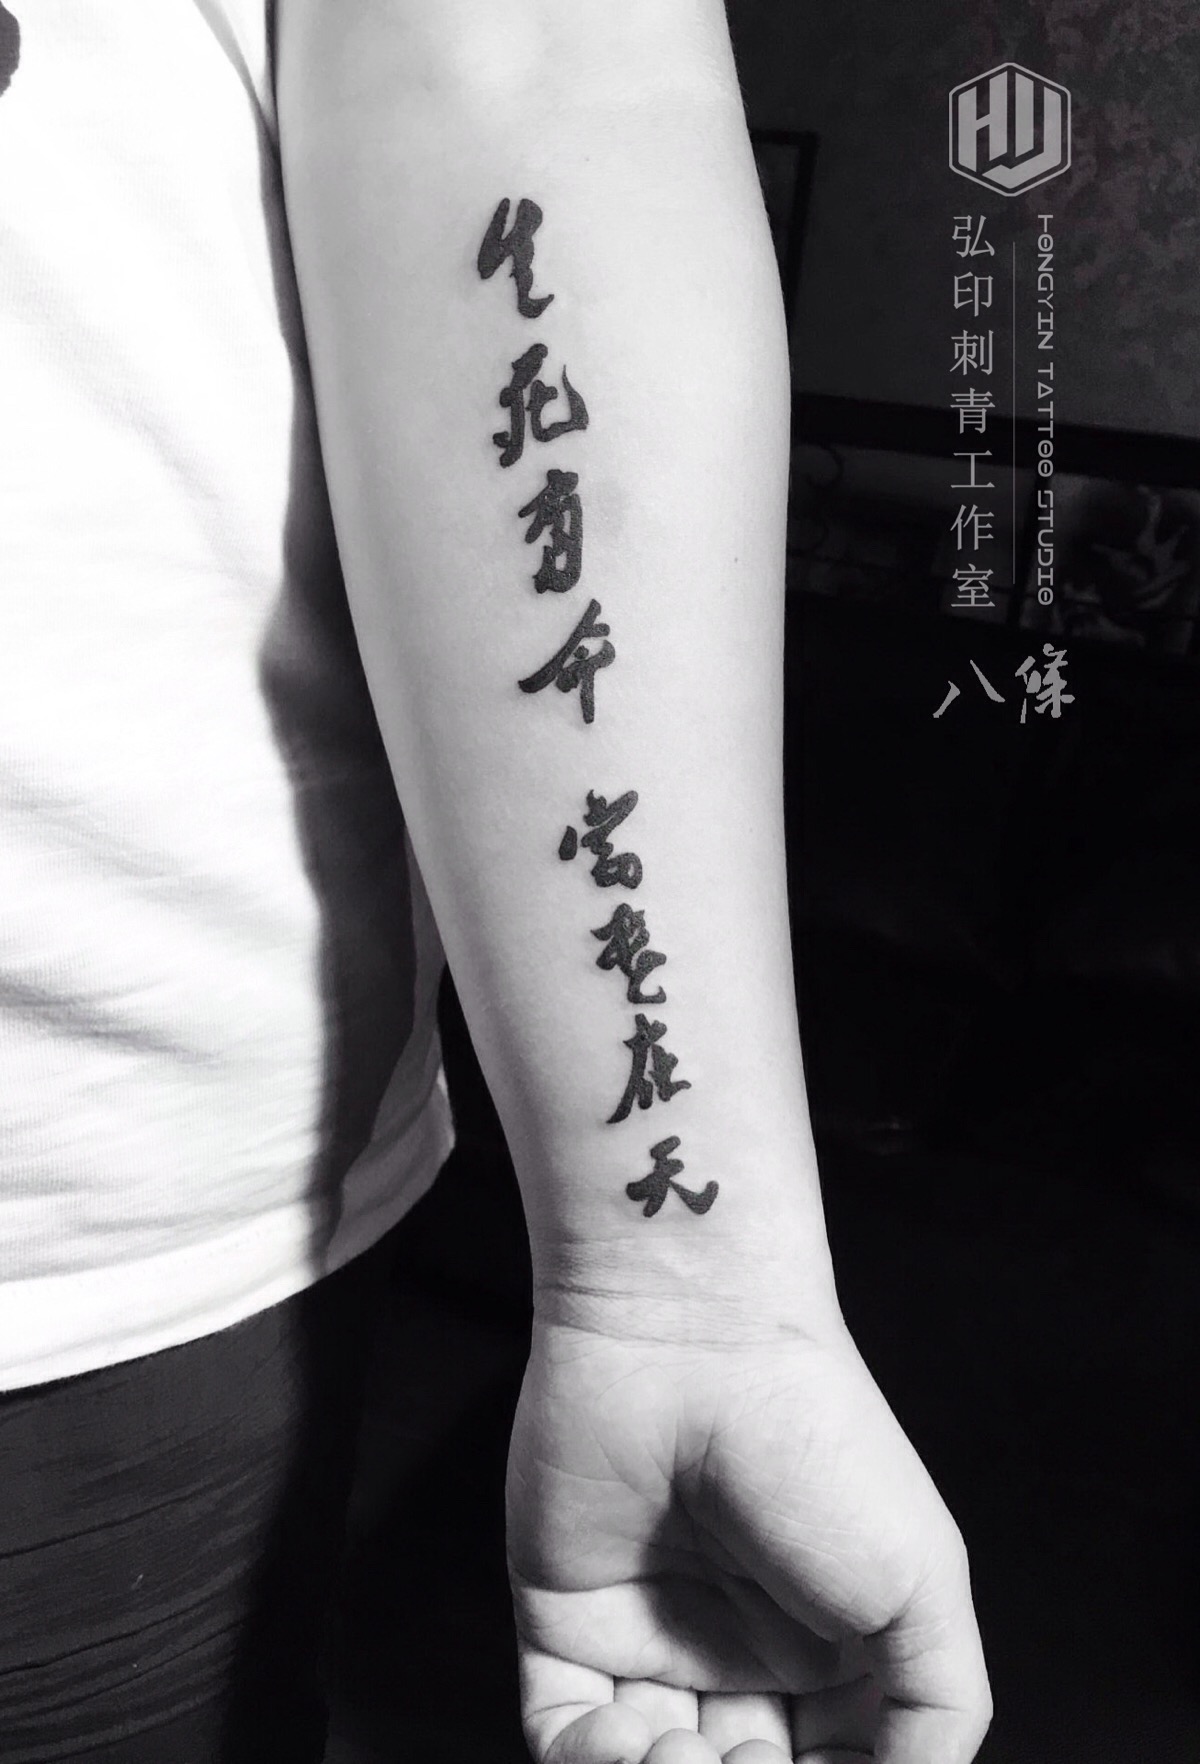 小臂汉字纹身"生死有命 富贵在天"